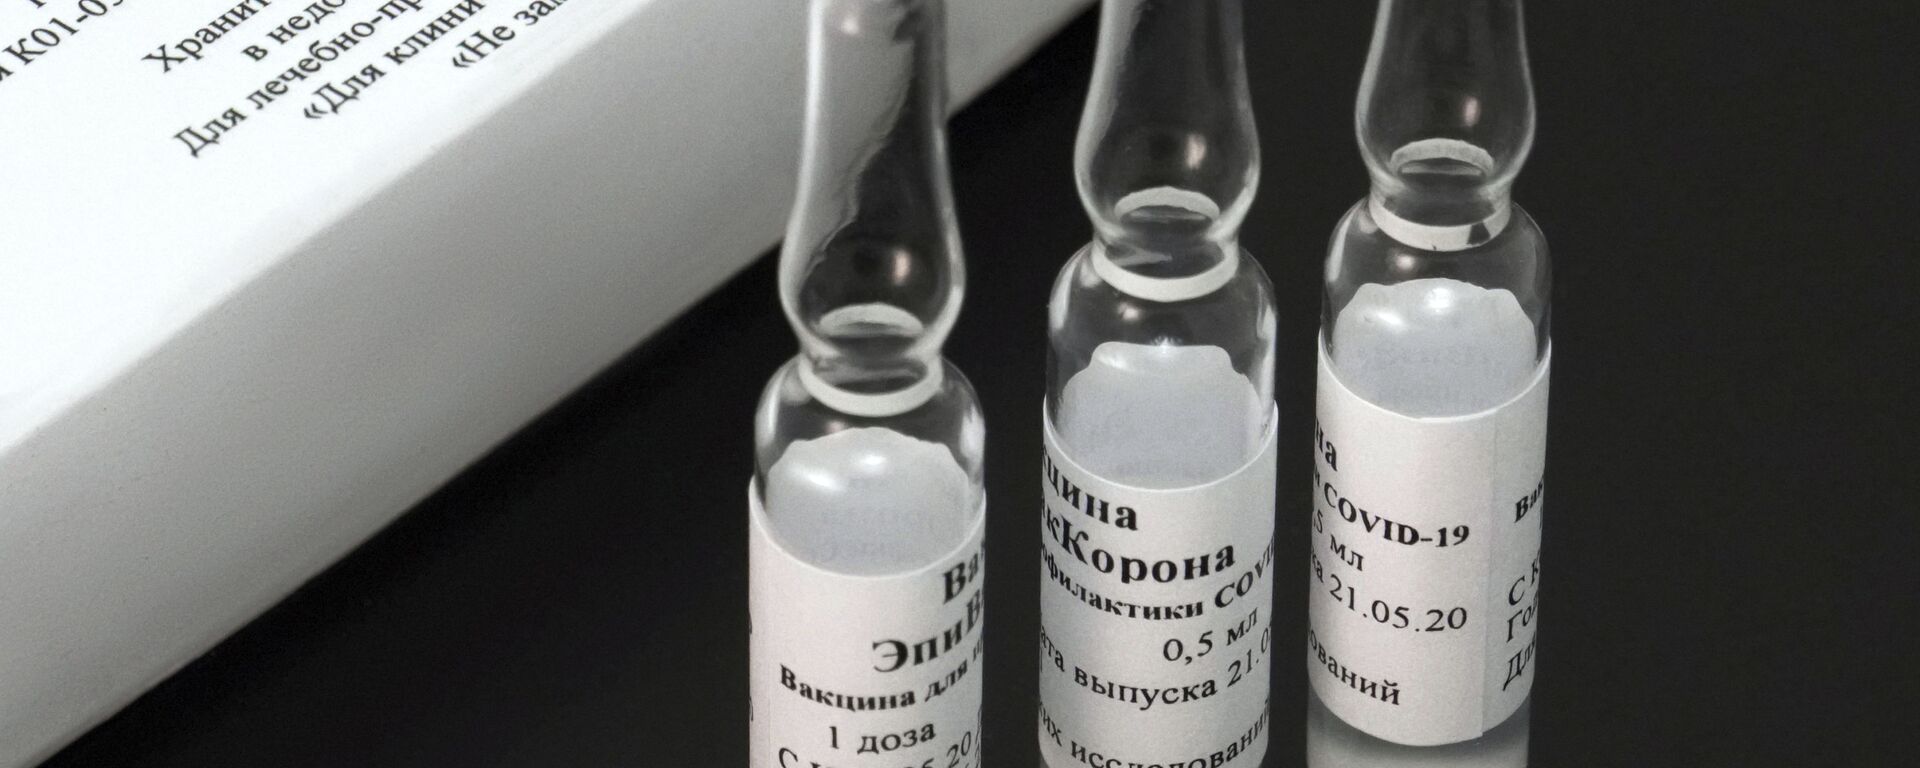 EpiVacCorona, vacuna rusa - Sputnik Mundo, 1920, 27.04.2021